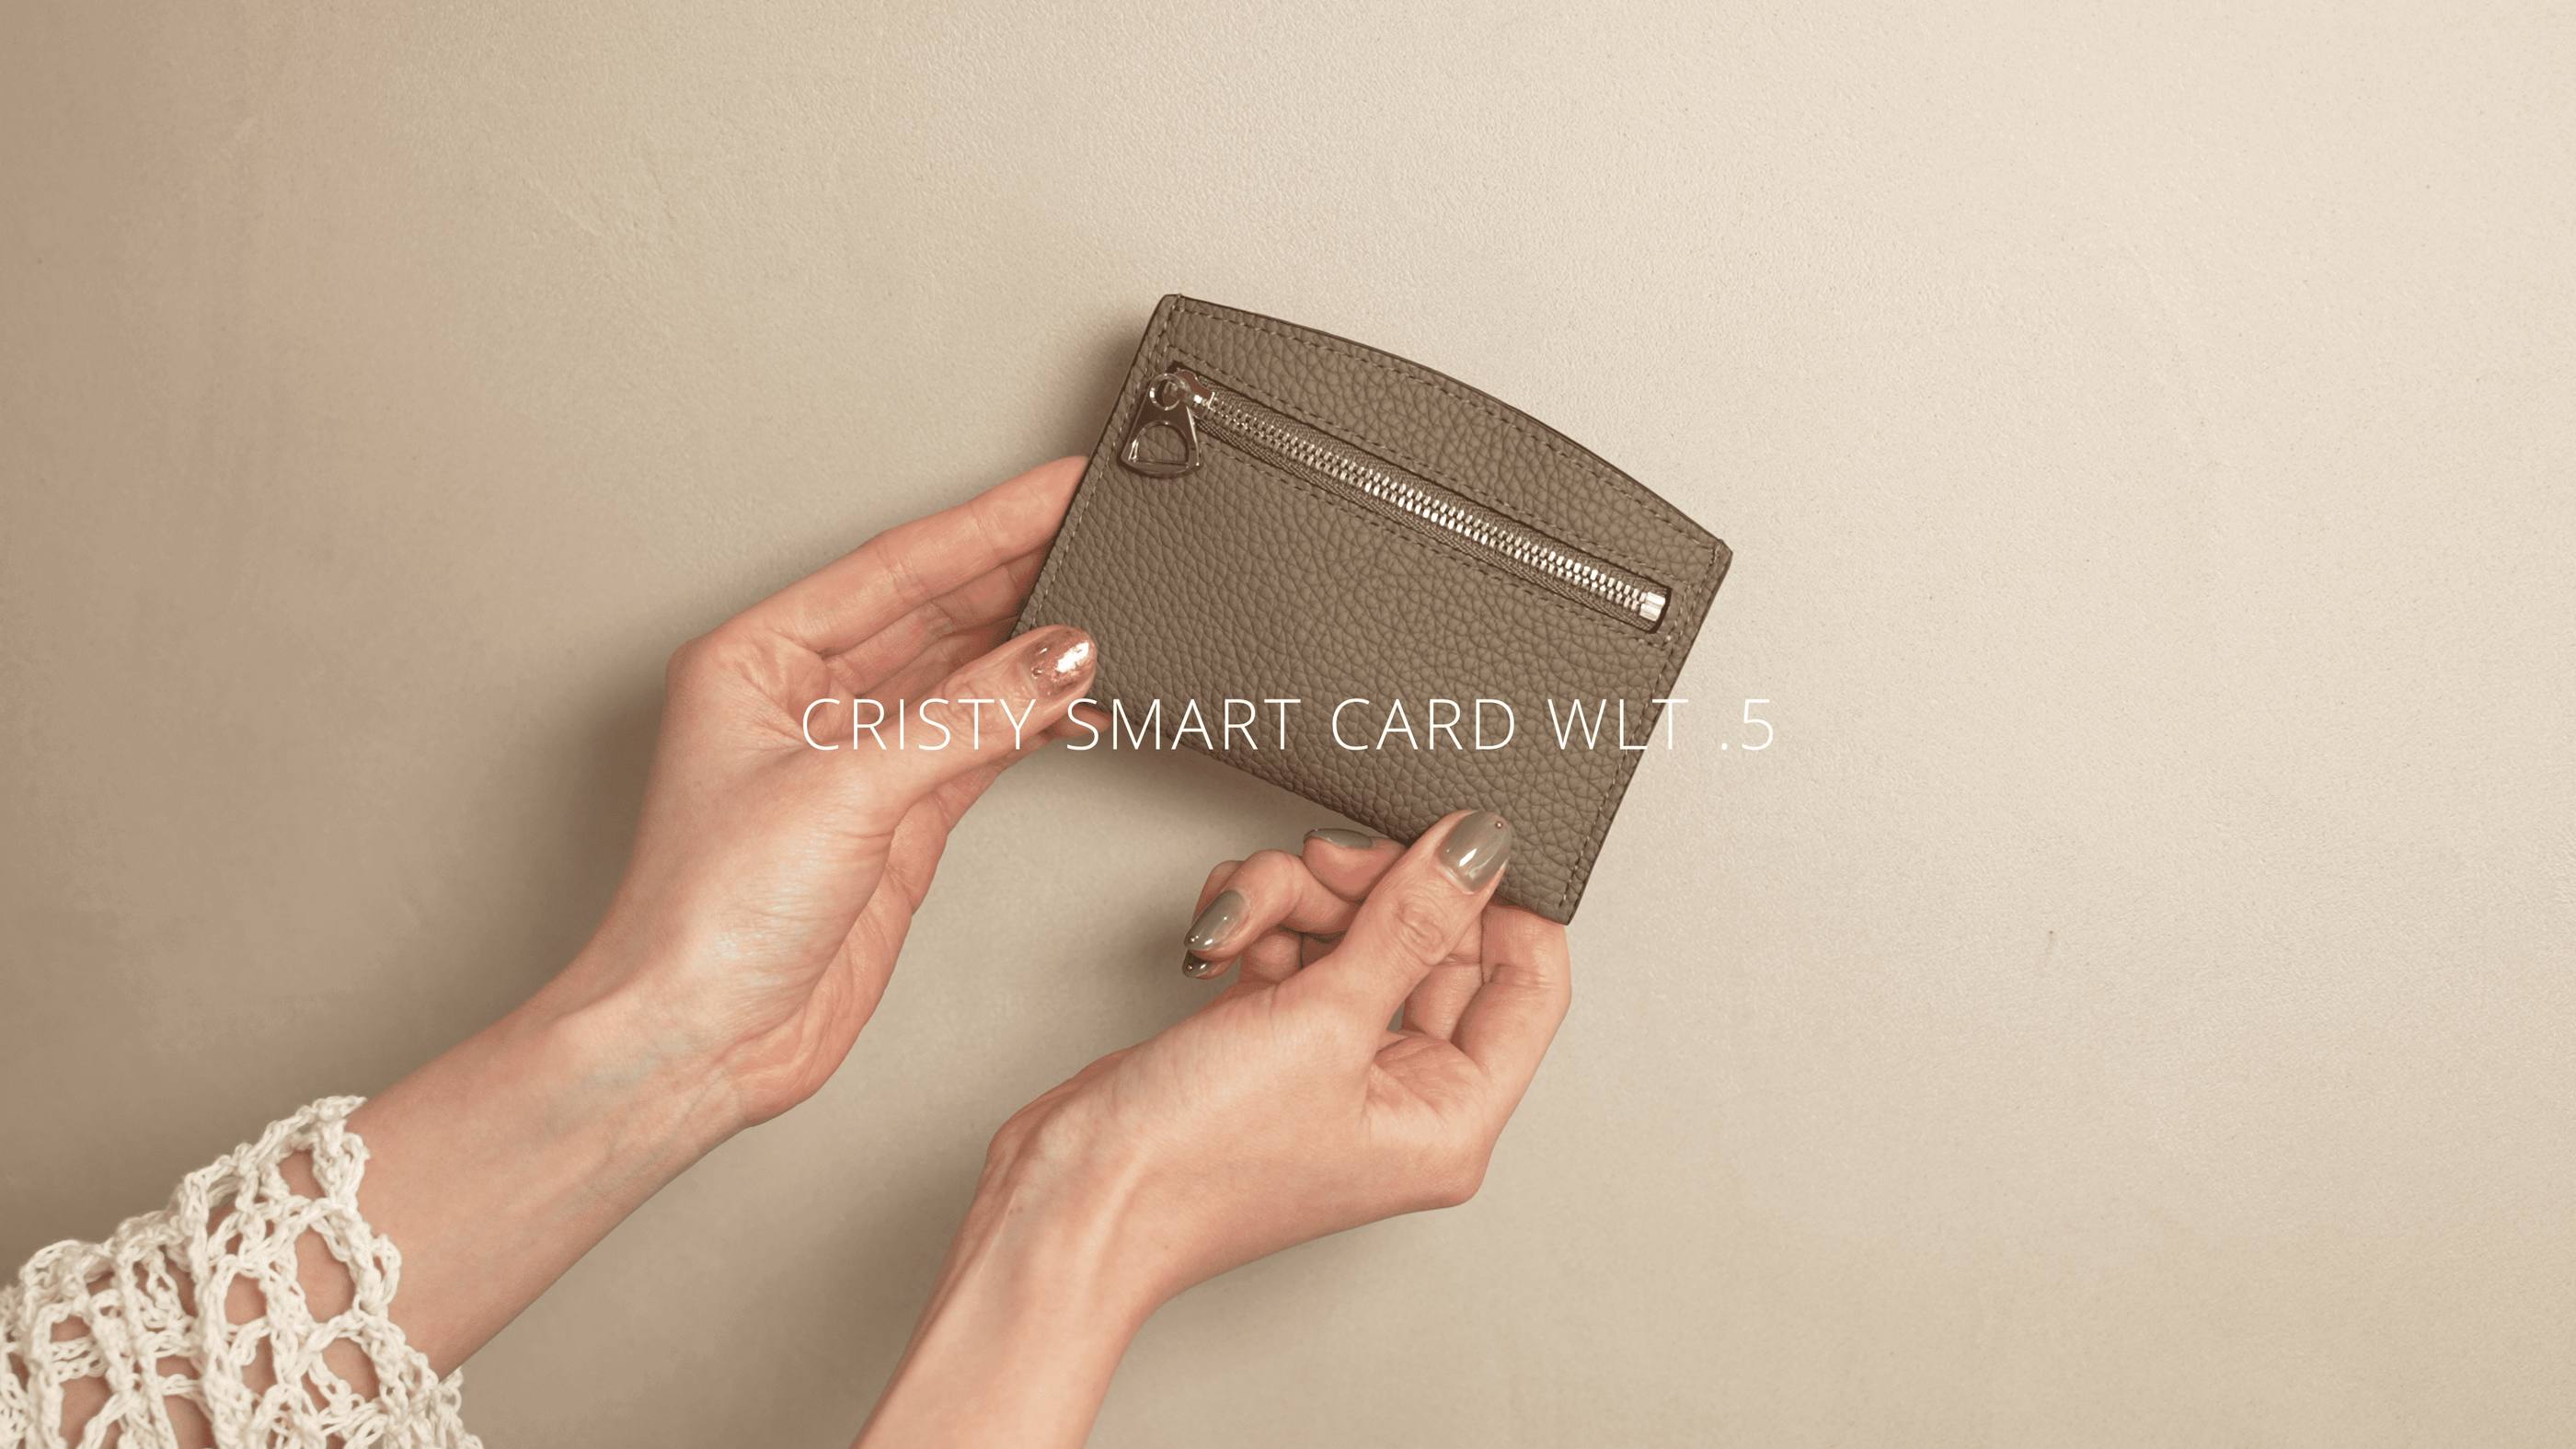 CRISTY SMART CARD WLT (クリティスマートカードウォレット) - ITTI (イッチ) | ミニ財布 サイフ さいふ メンズ レディース 本革 レザーブランド 小さい